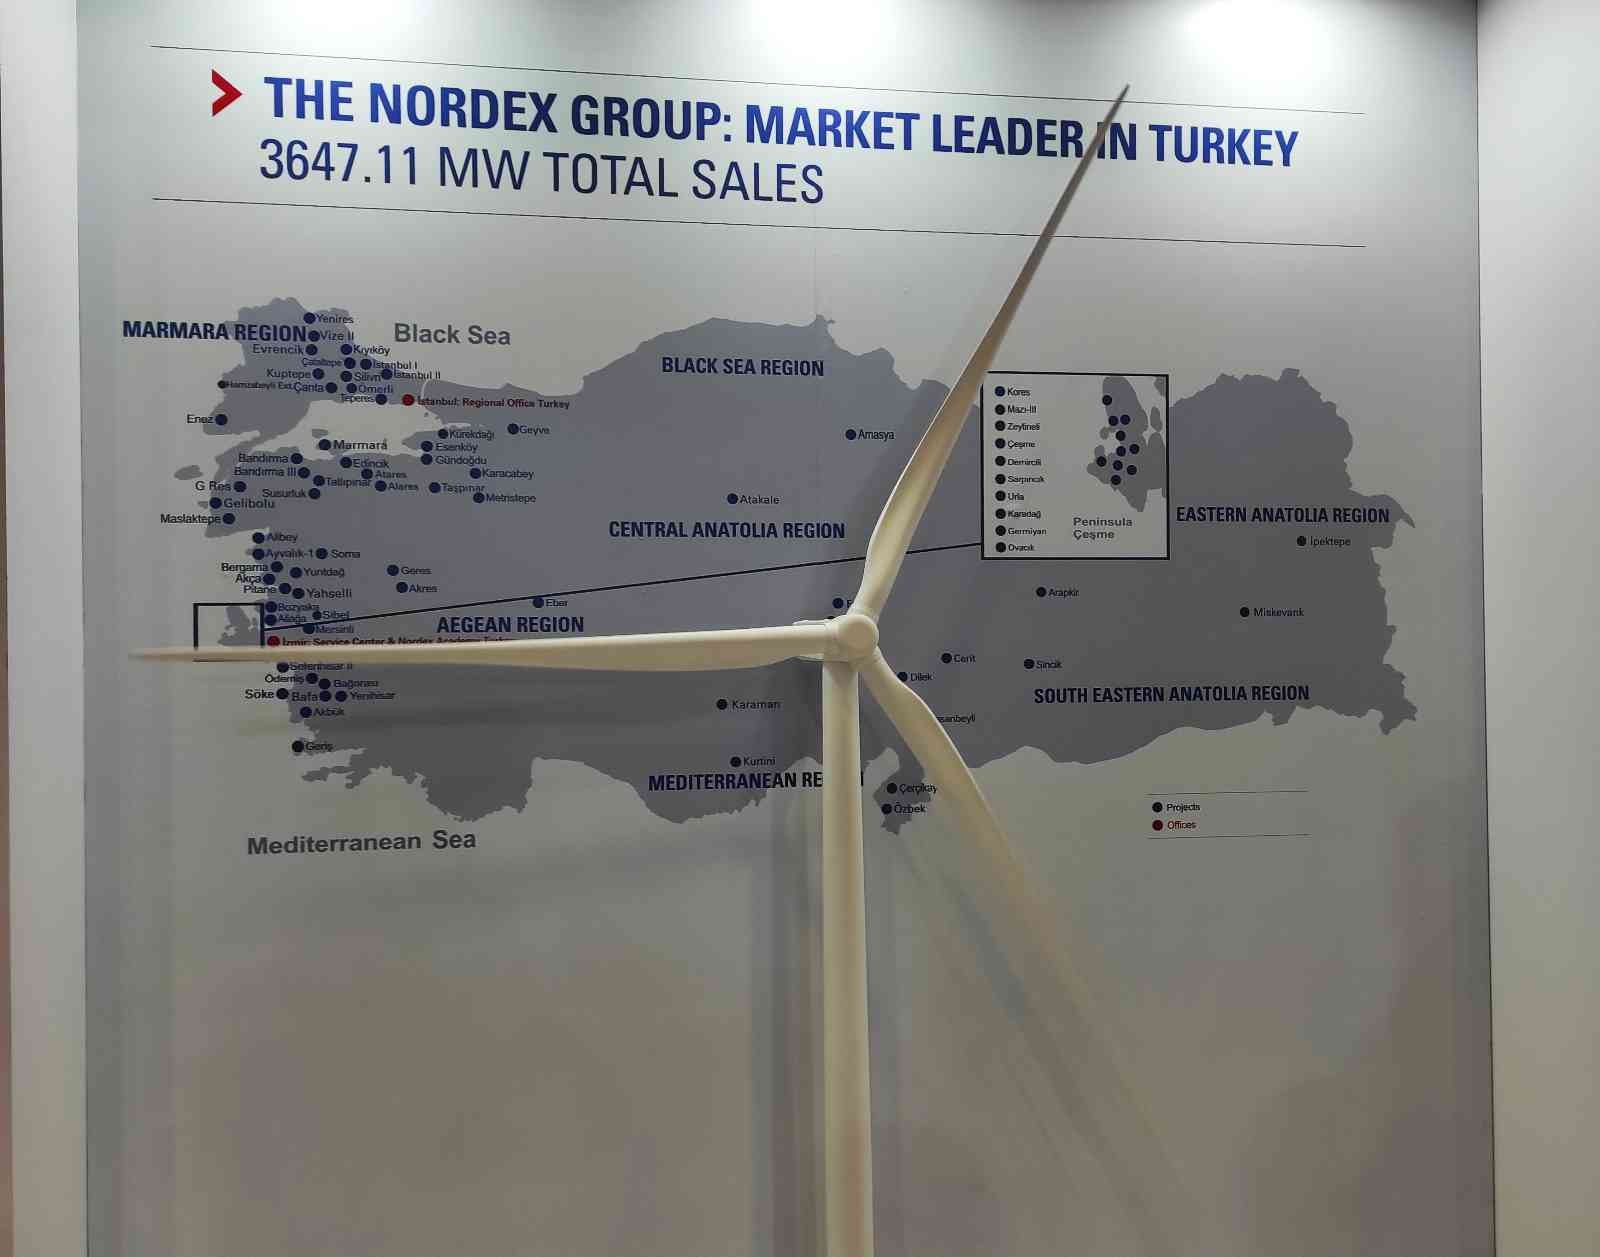 Rüzgar enerjisi alanında faaliyet gösteren üretici firmalar Enerji ve Çevre Fuarı’nda yer aldı. Uluslararası enerji fuarı ICCI-Uluslararası ...